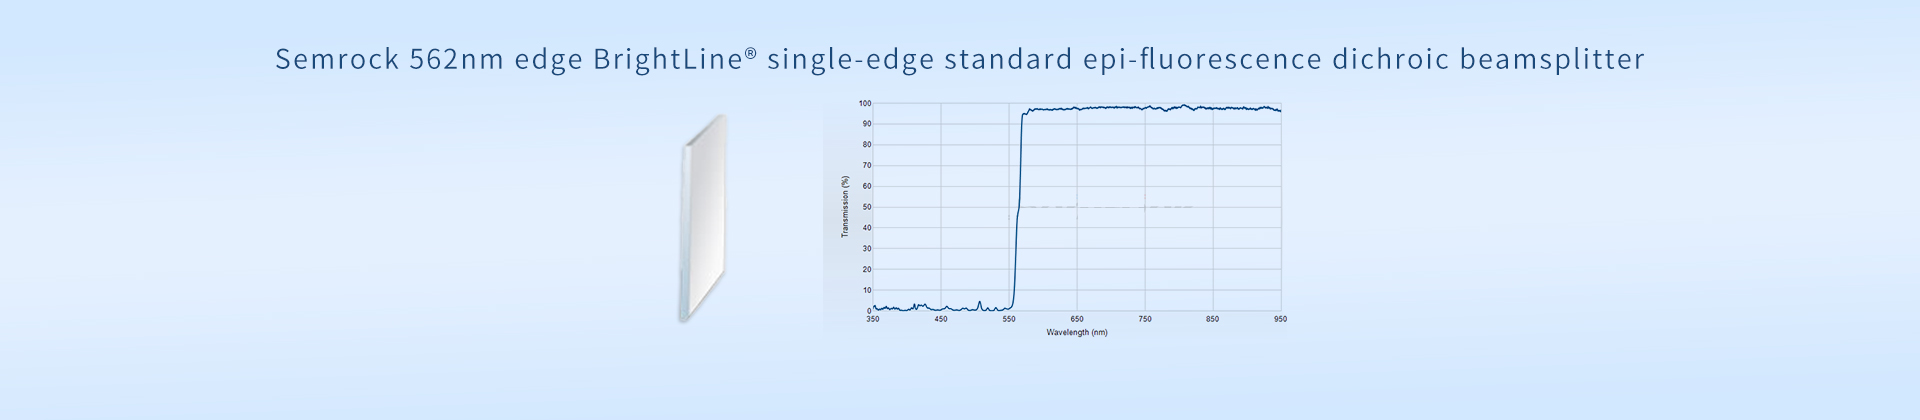 Semrock 562nm edge BrightLine® single-edge standard epi-fluorescence dichroic beamsplitter